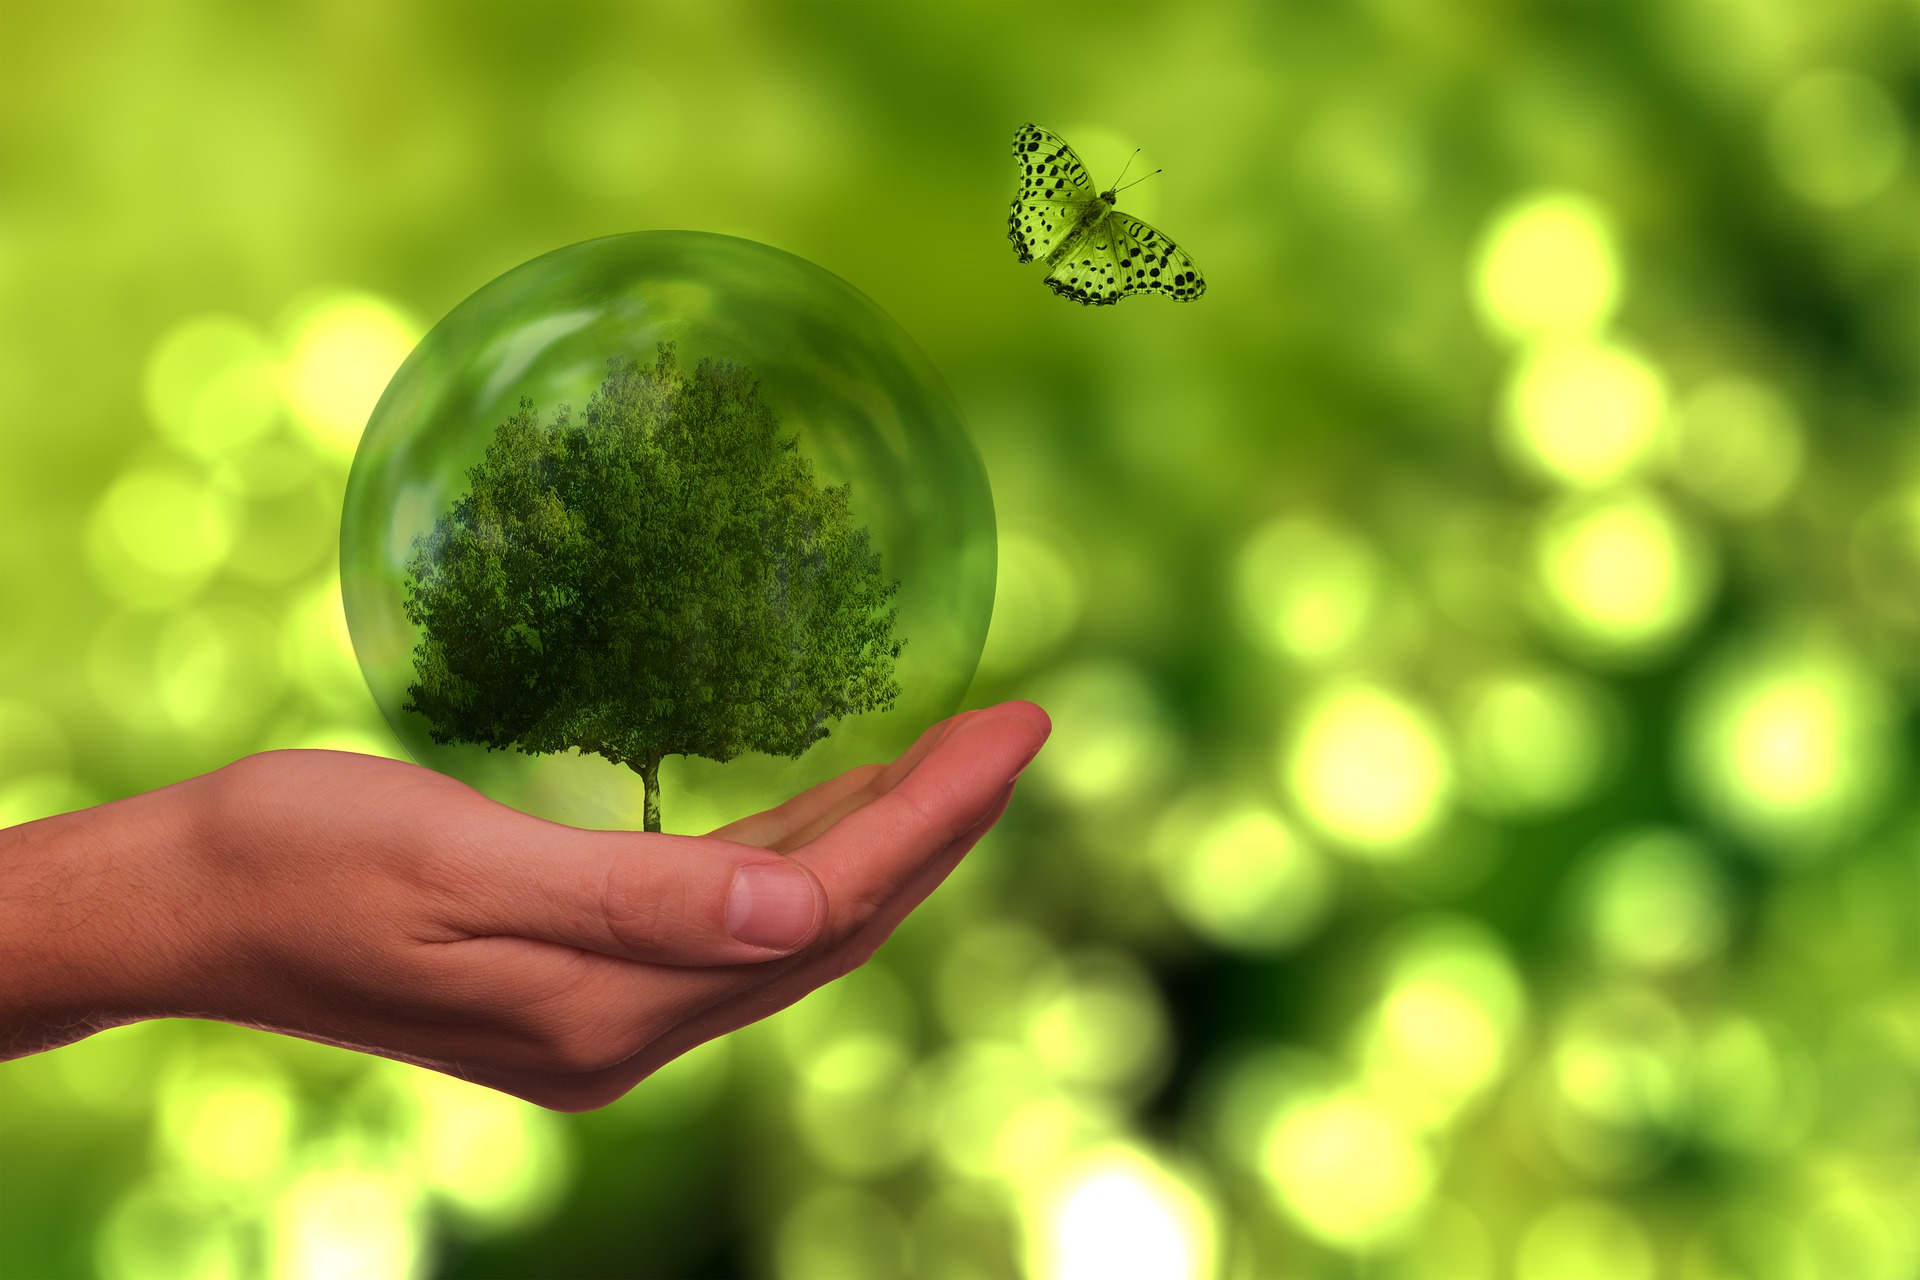 Eine Hand hält eine Kugel, in der sich ein Miniaturbaum befindet. EIn Schmetterling fliegt rechts über der Kugel. Der Hintergrund ist unscharf ein grüner, lichtdurchfluteter Wald.